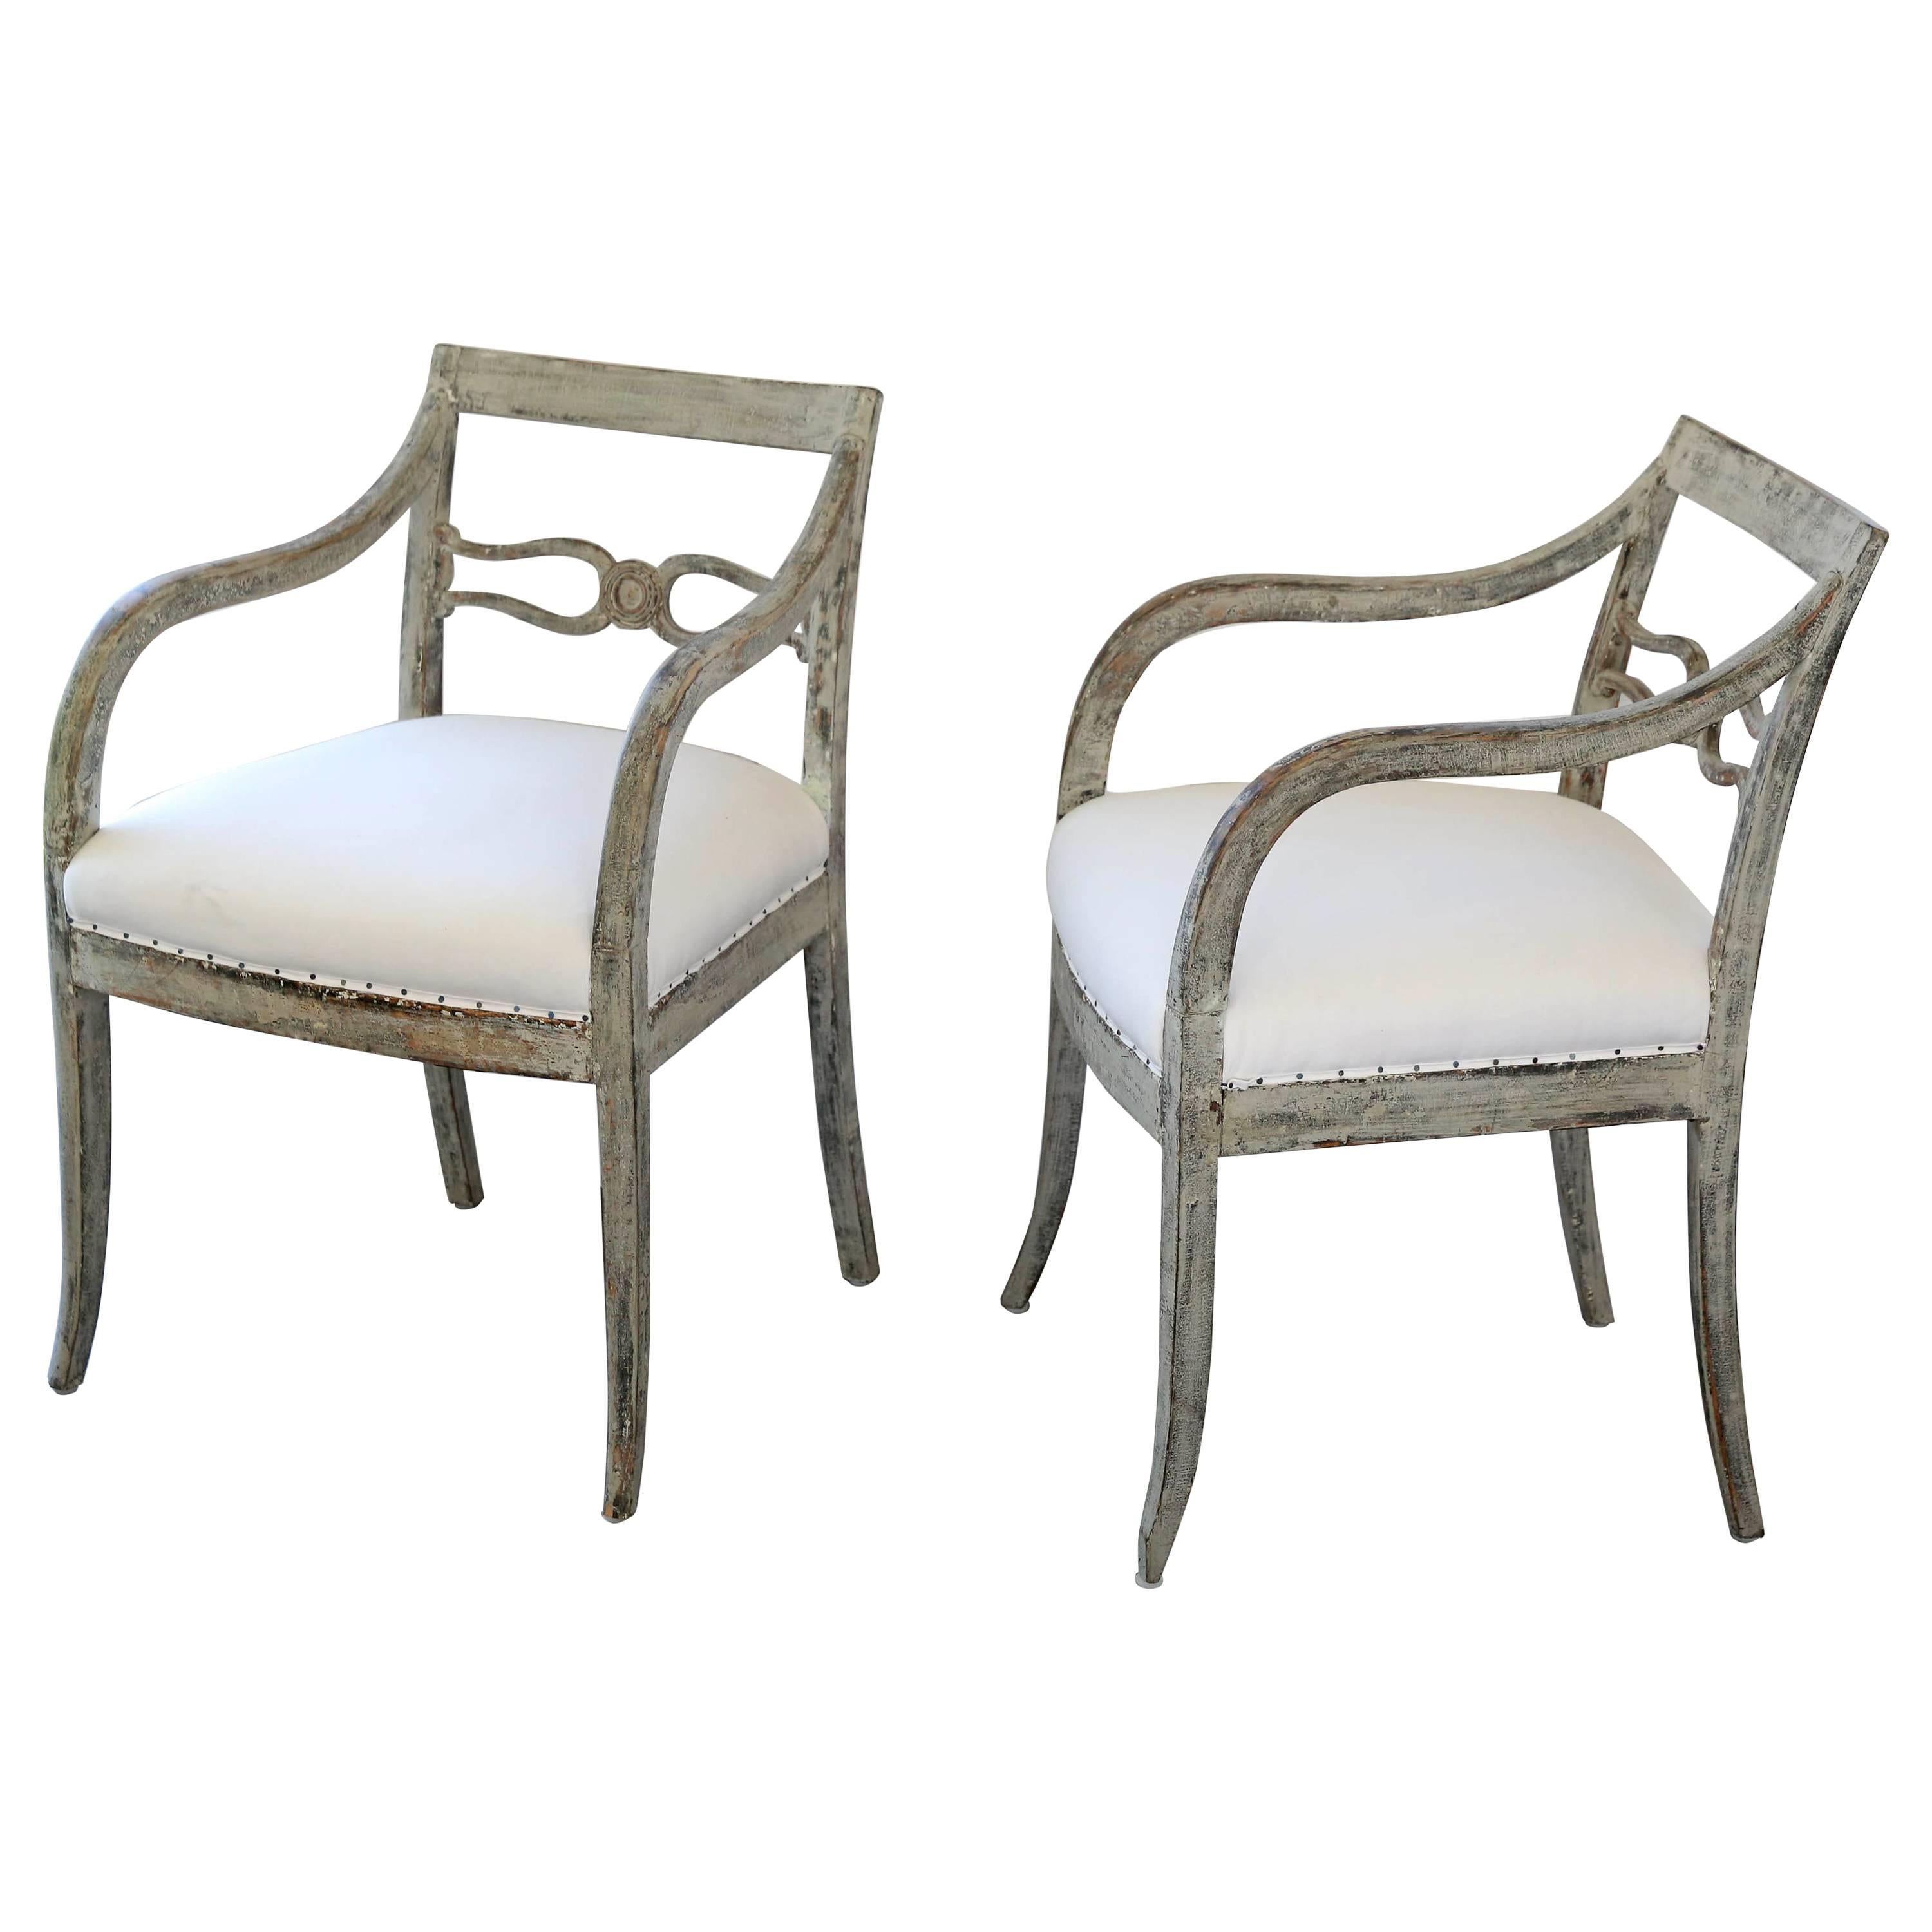 Schwedische Sessel im Gustavianischen Stil, bemalt und mit Musselinstoff bezogen, 19. Jahrhundert